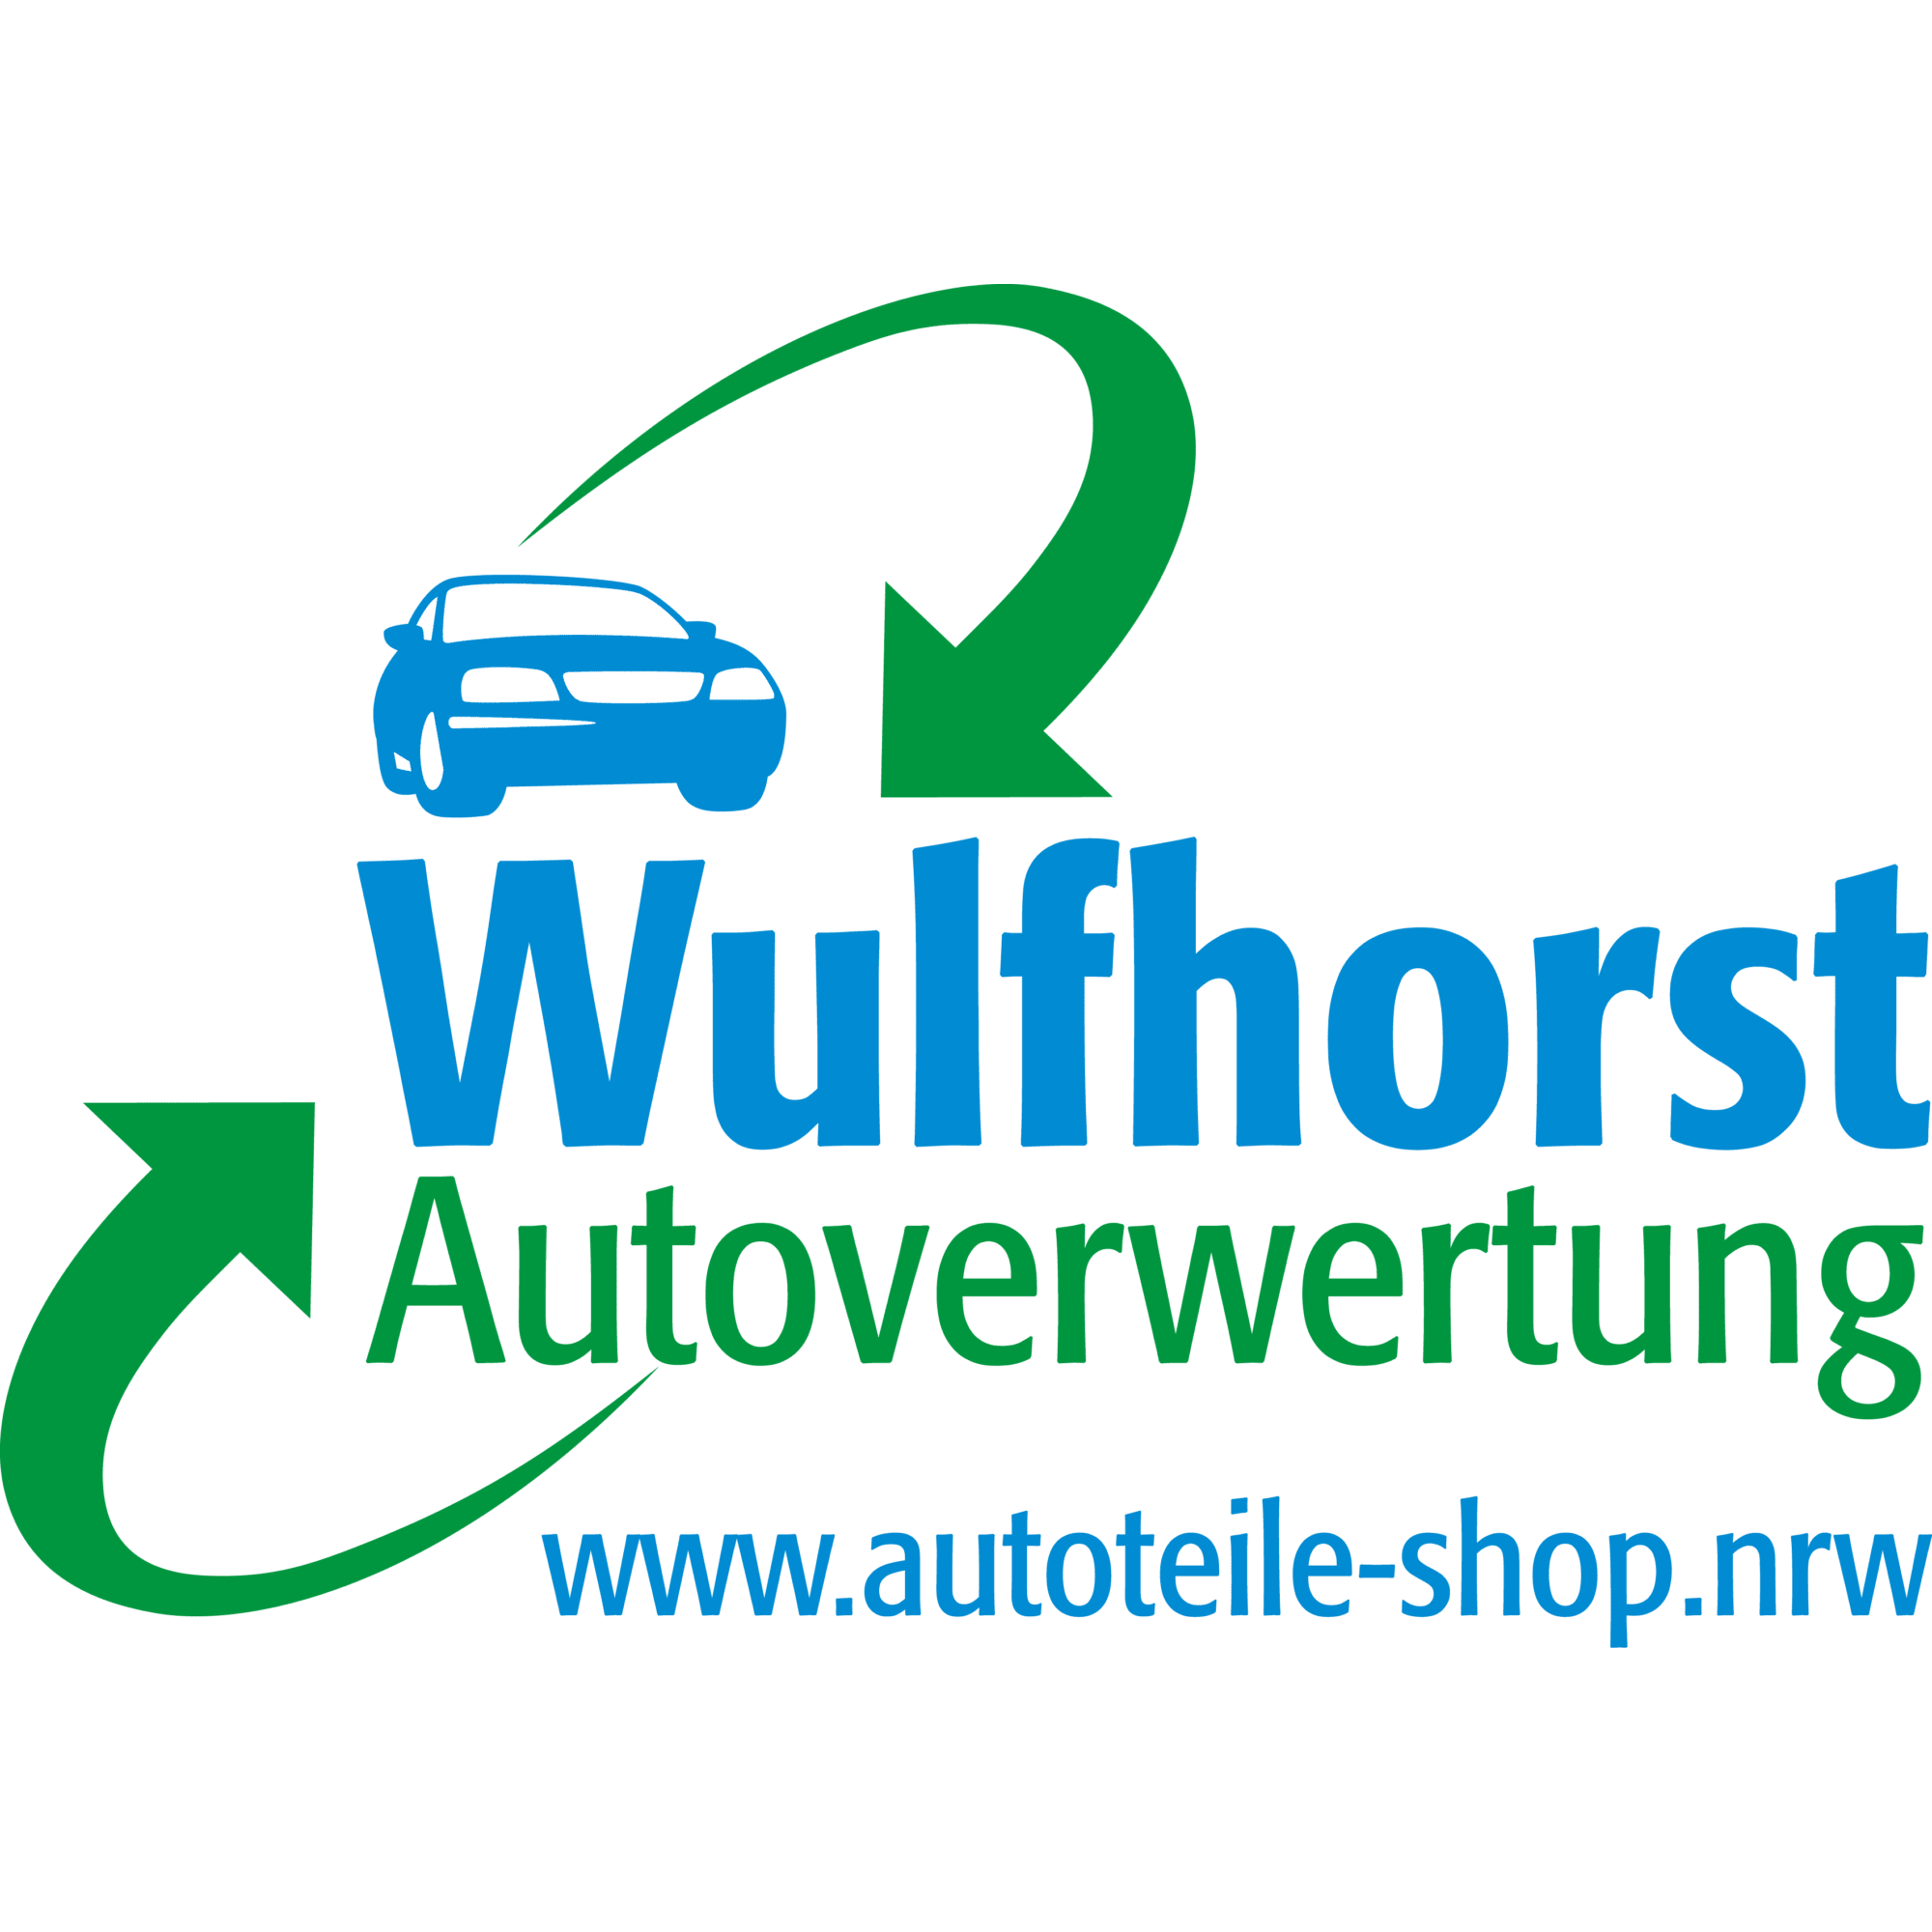 Autoverwertung www.autoteile-shop.nrw Wulfhorst in Borgentreich - Logo